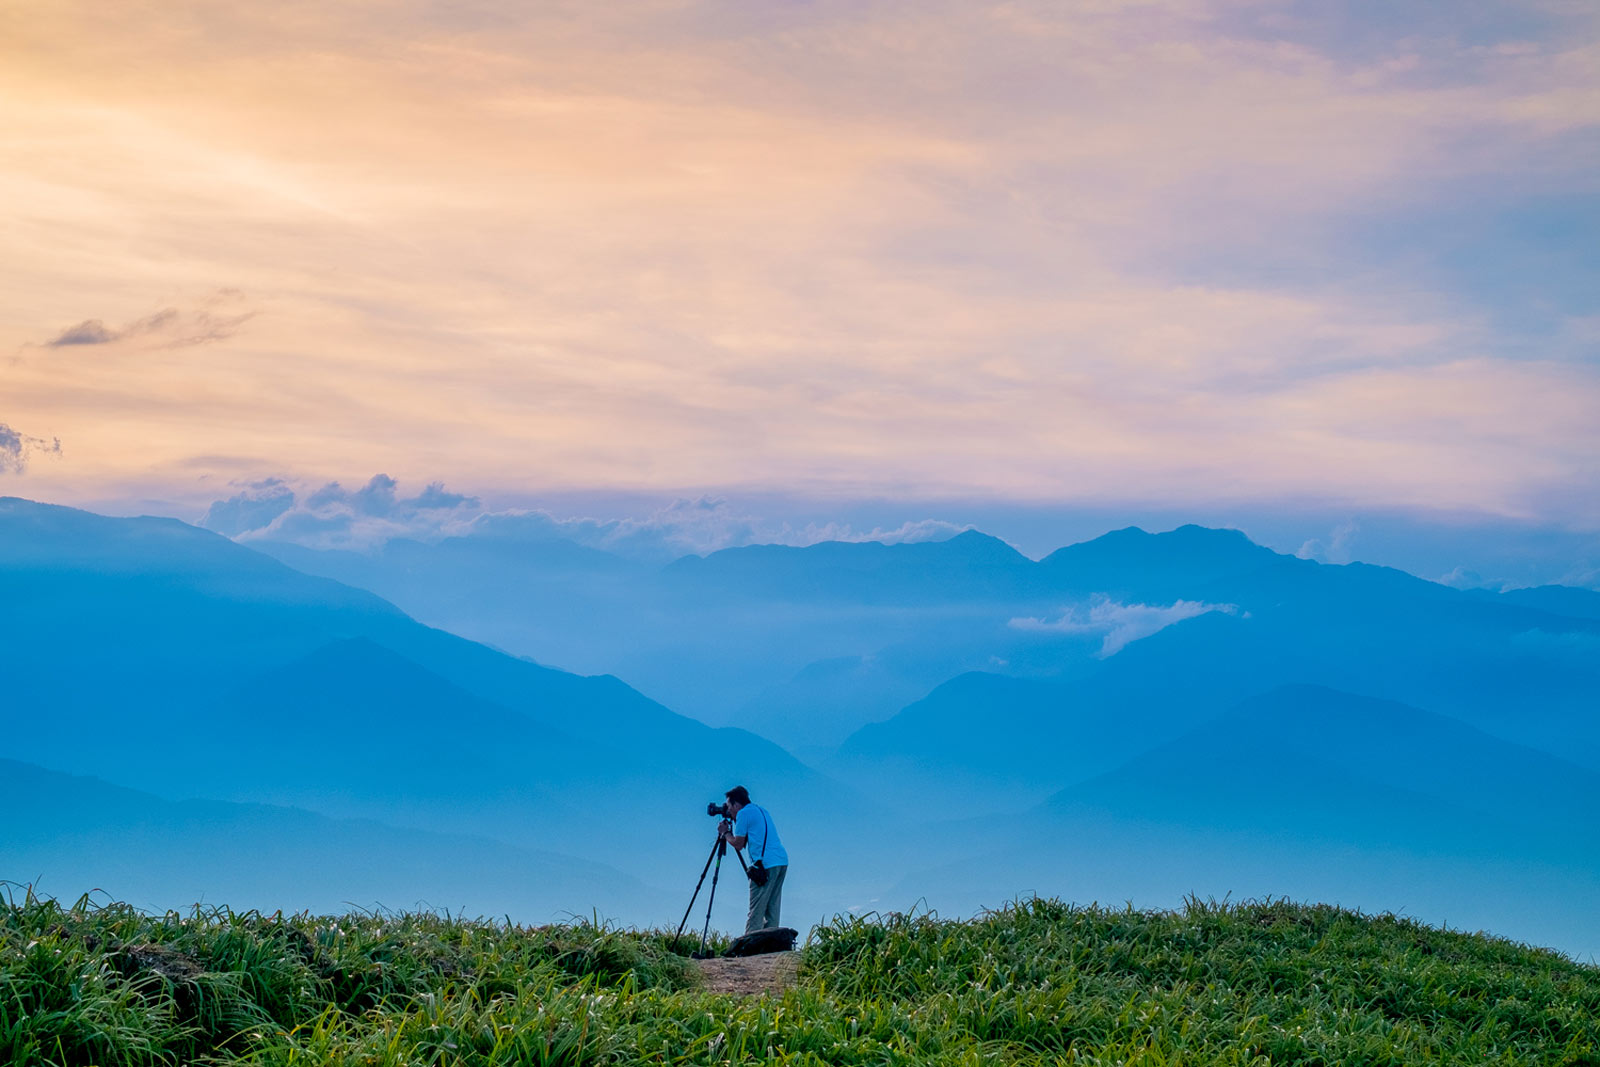 Taiwan: a photographer’s paradise?